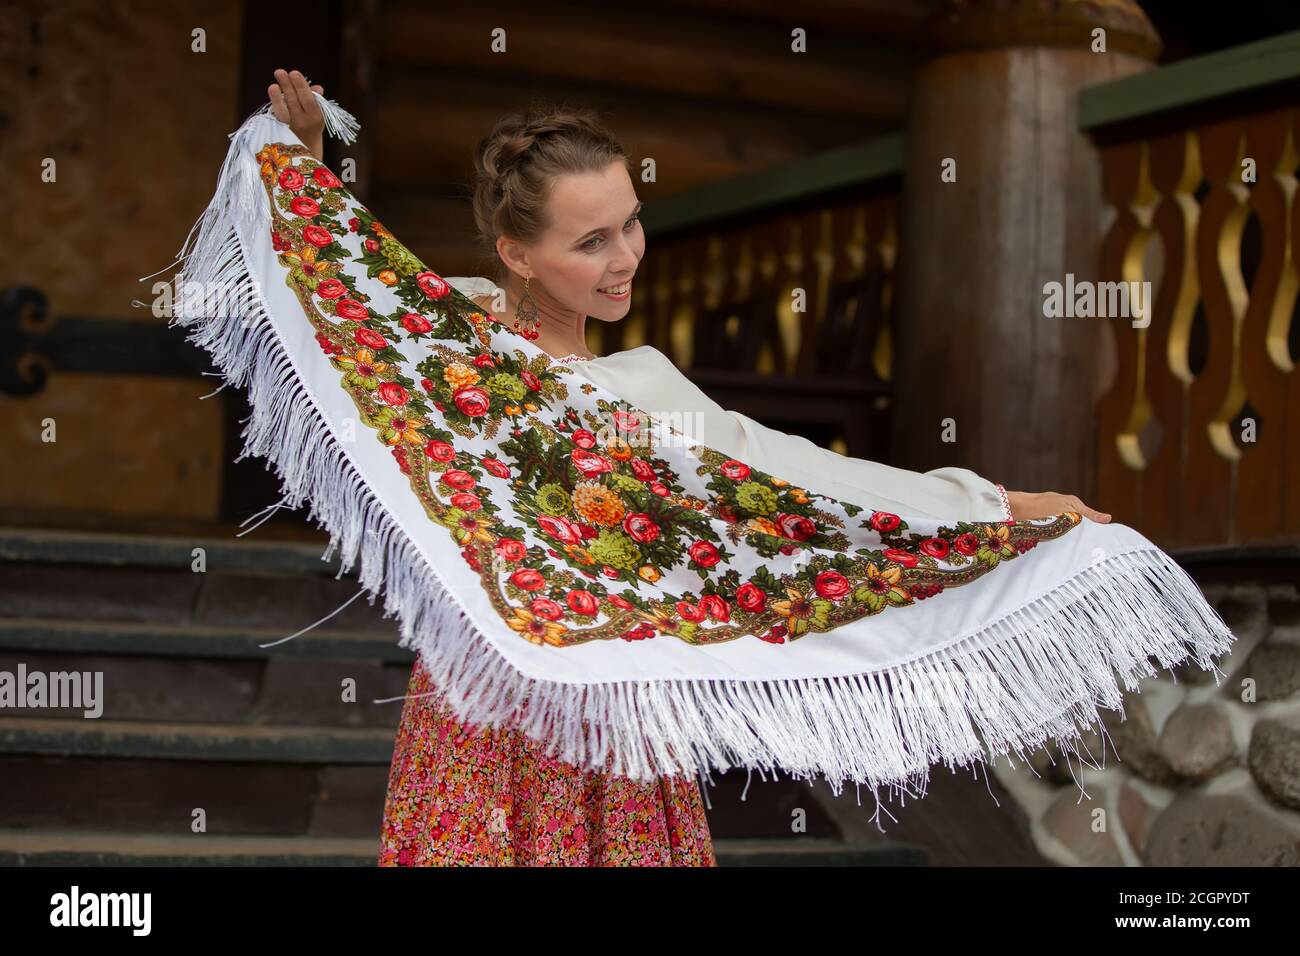 Sciarpa russa immagini e fotografie stock ad alta risoluzione - Alamy